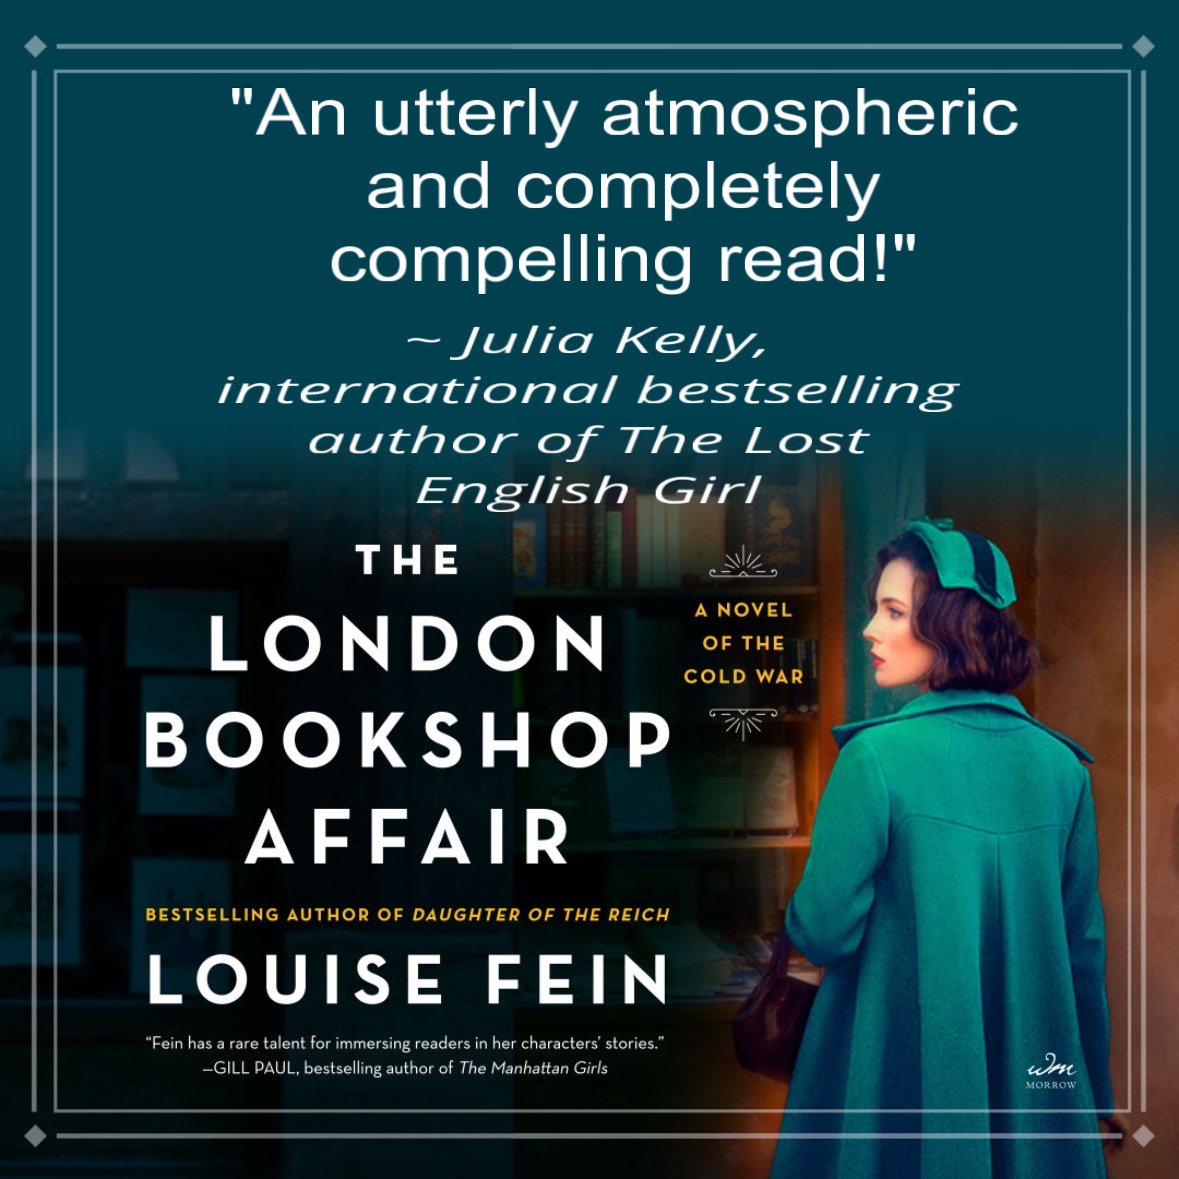 The London Bookshop Affair — Louise Fein